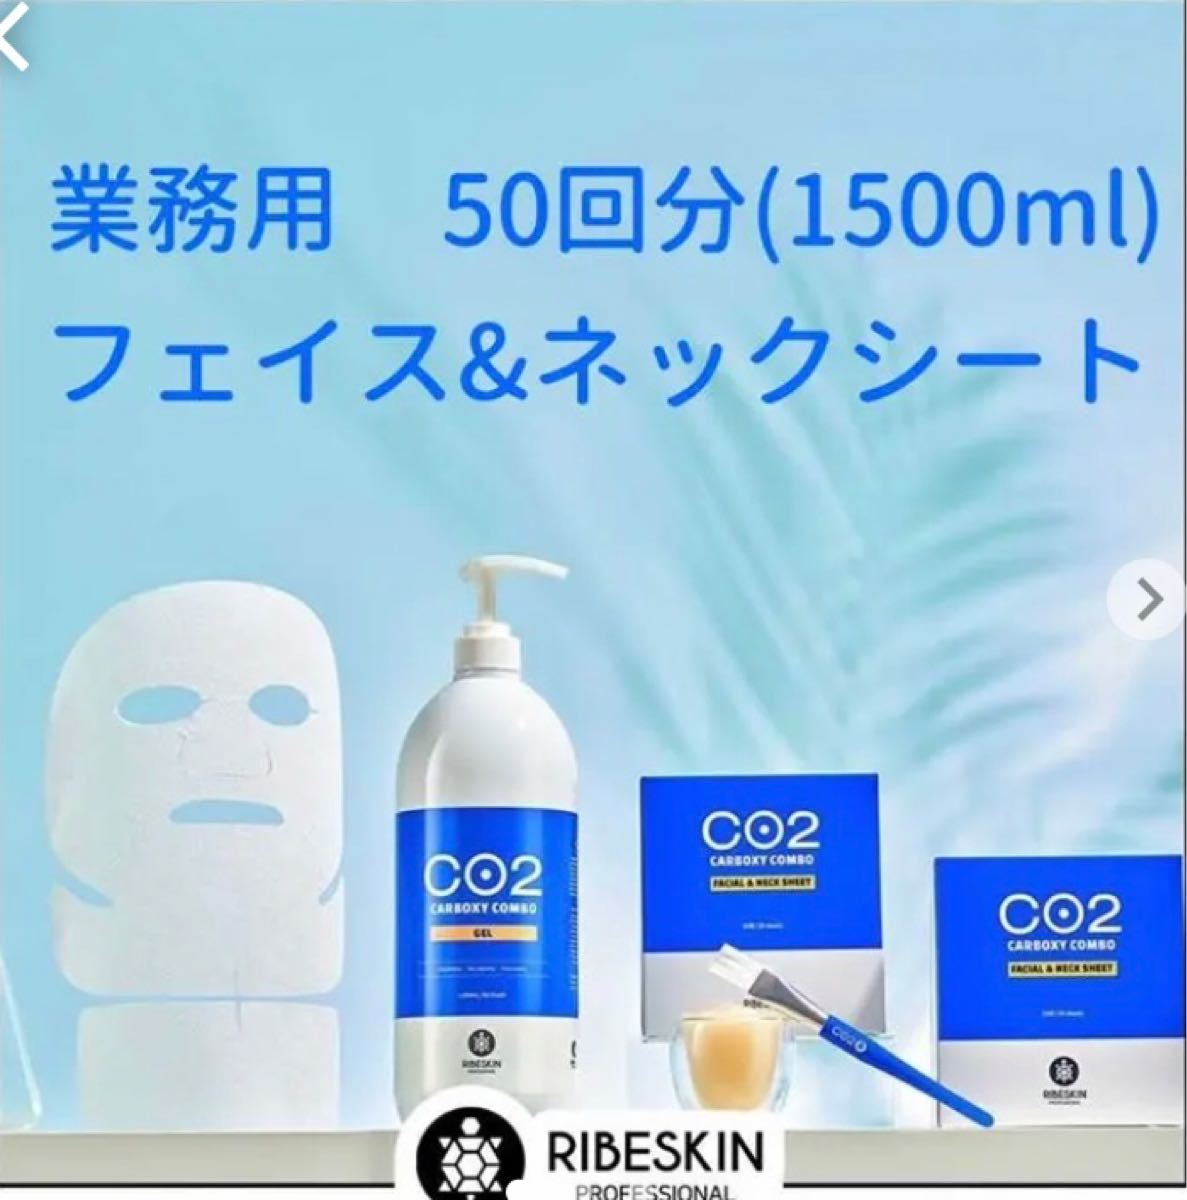 マスクパック10枚付カーボキシー炭酸パック 業務用(25回分) - 通販